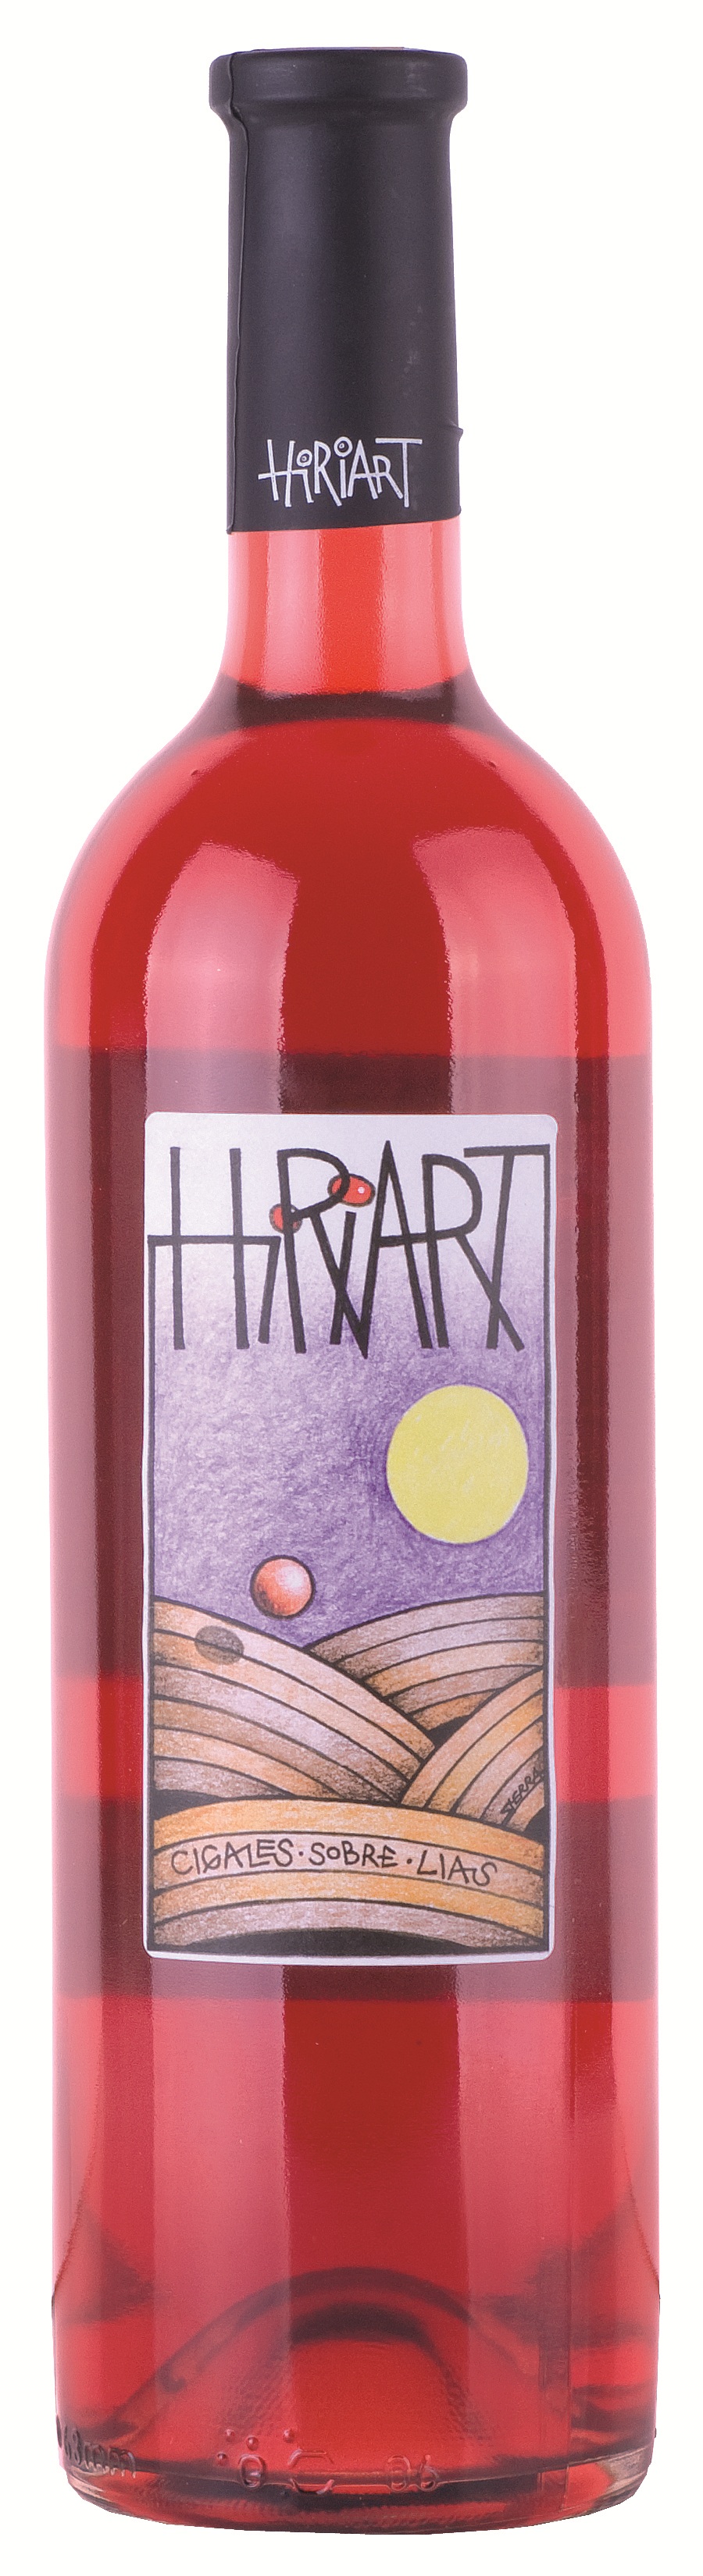 Logo Wein Hiriart Rosado Fermentado en Barrica